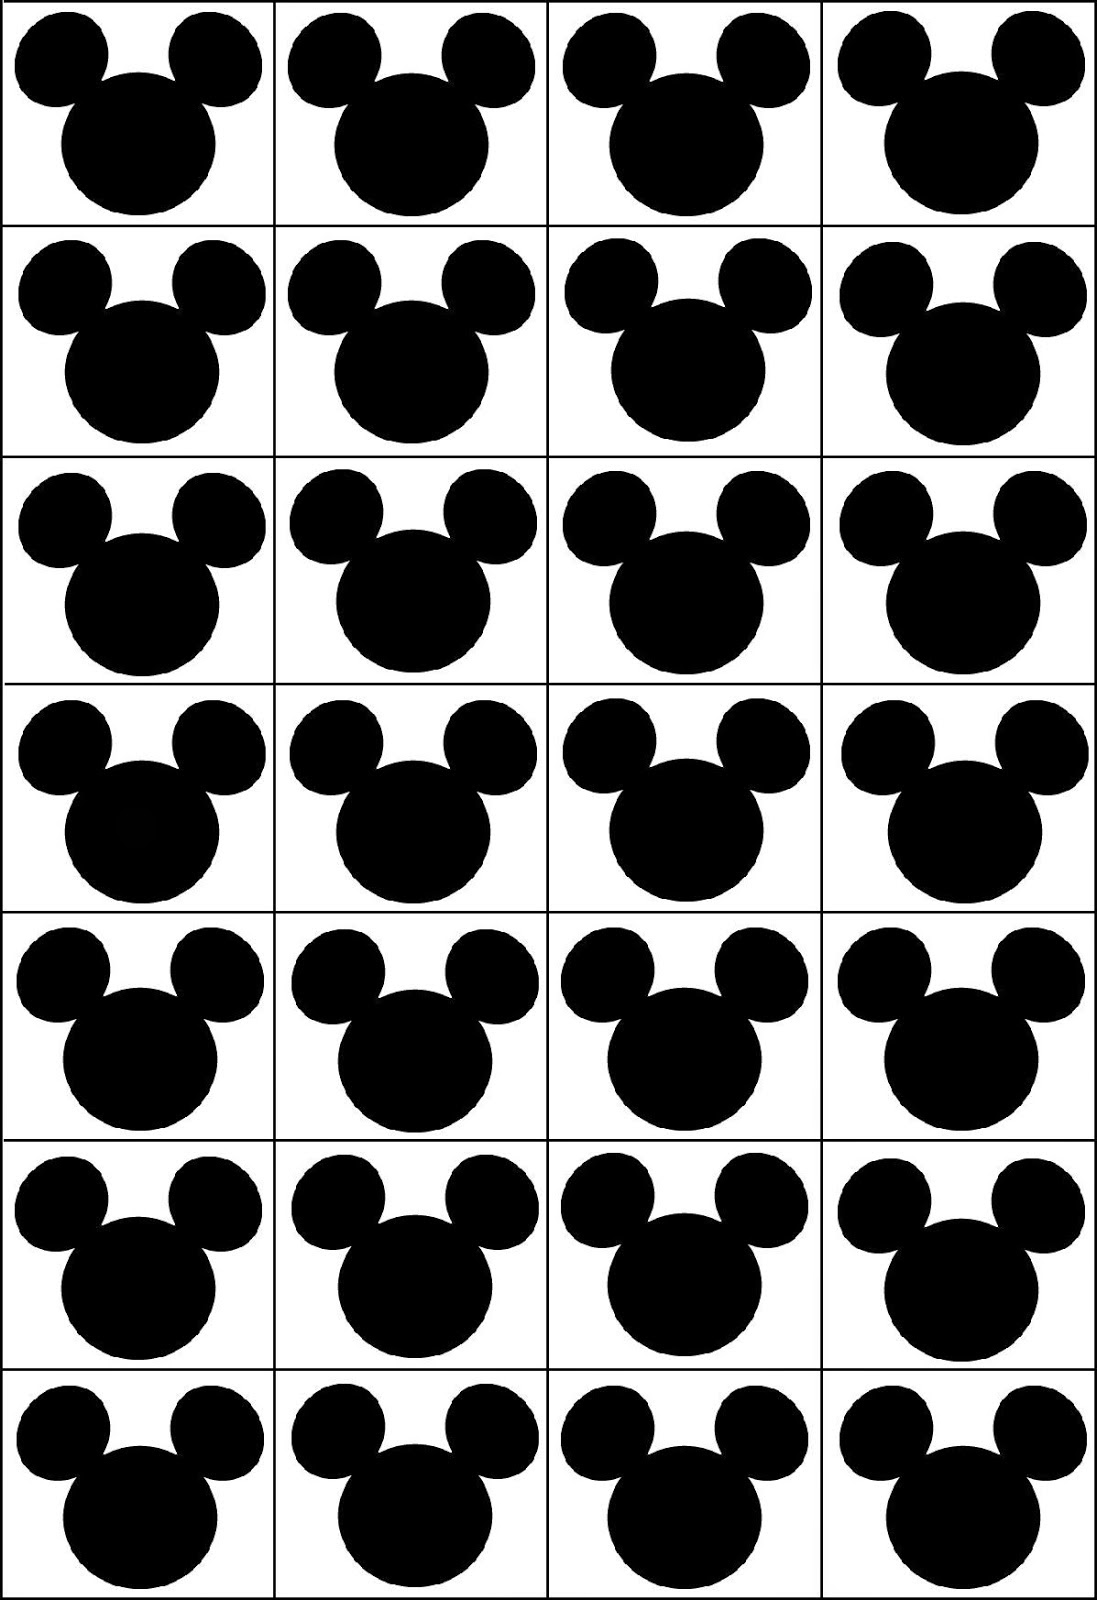 bingo-de-personajes-disney-para-imprimir-gratis-mickey-mouse